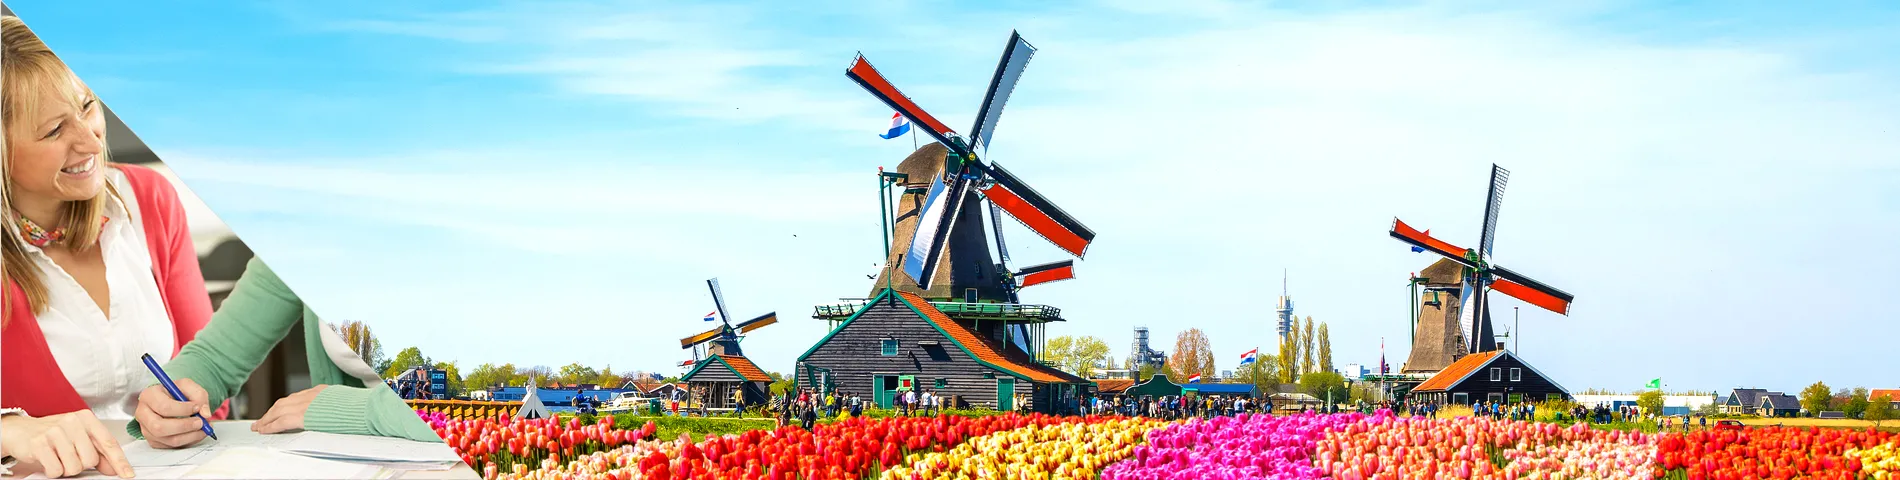 ประเทศเนเธอร์แลนด์ - เรียนและพักที่บ้านครู